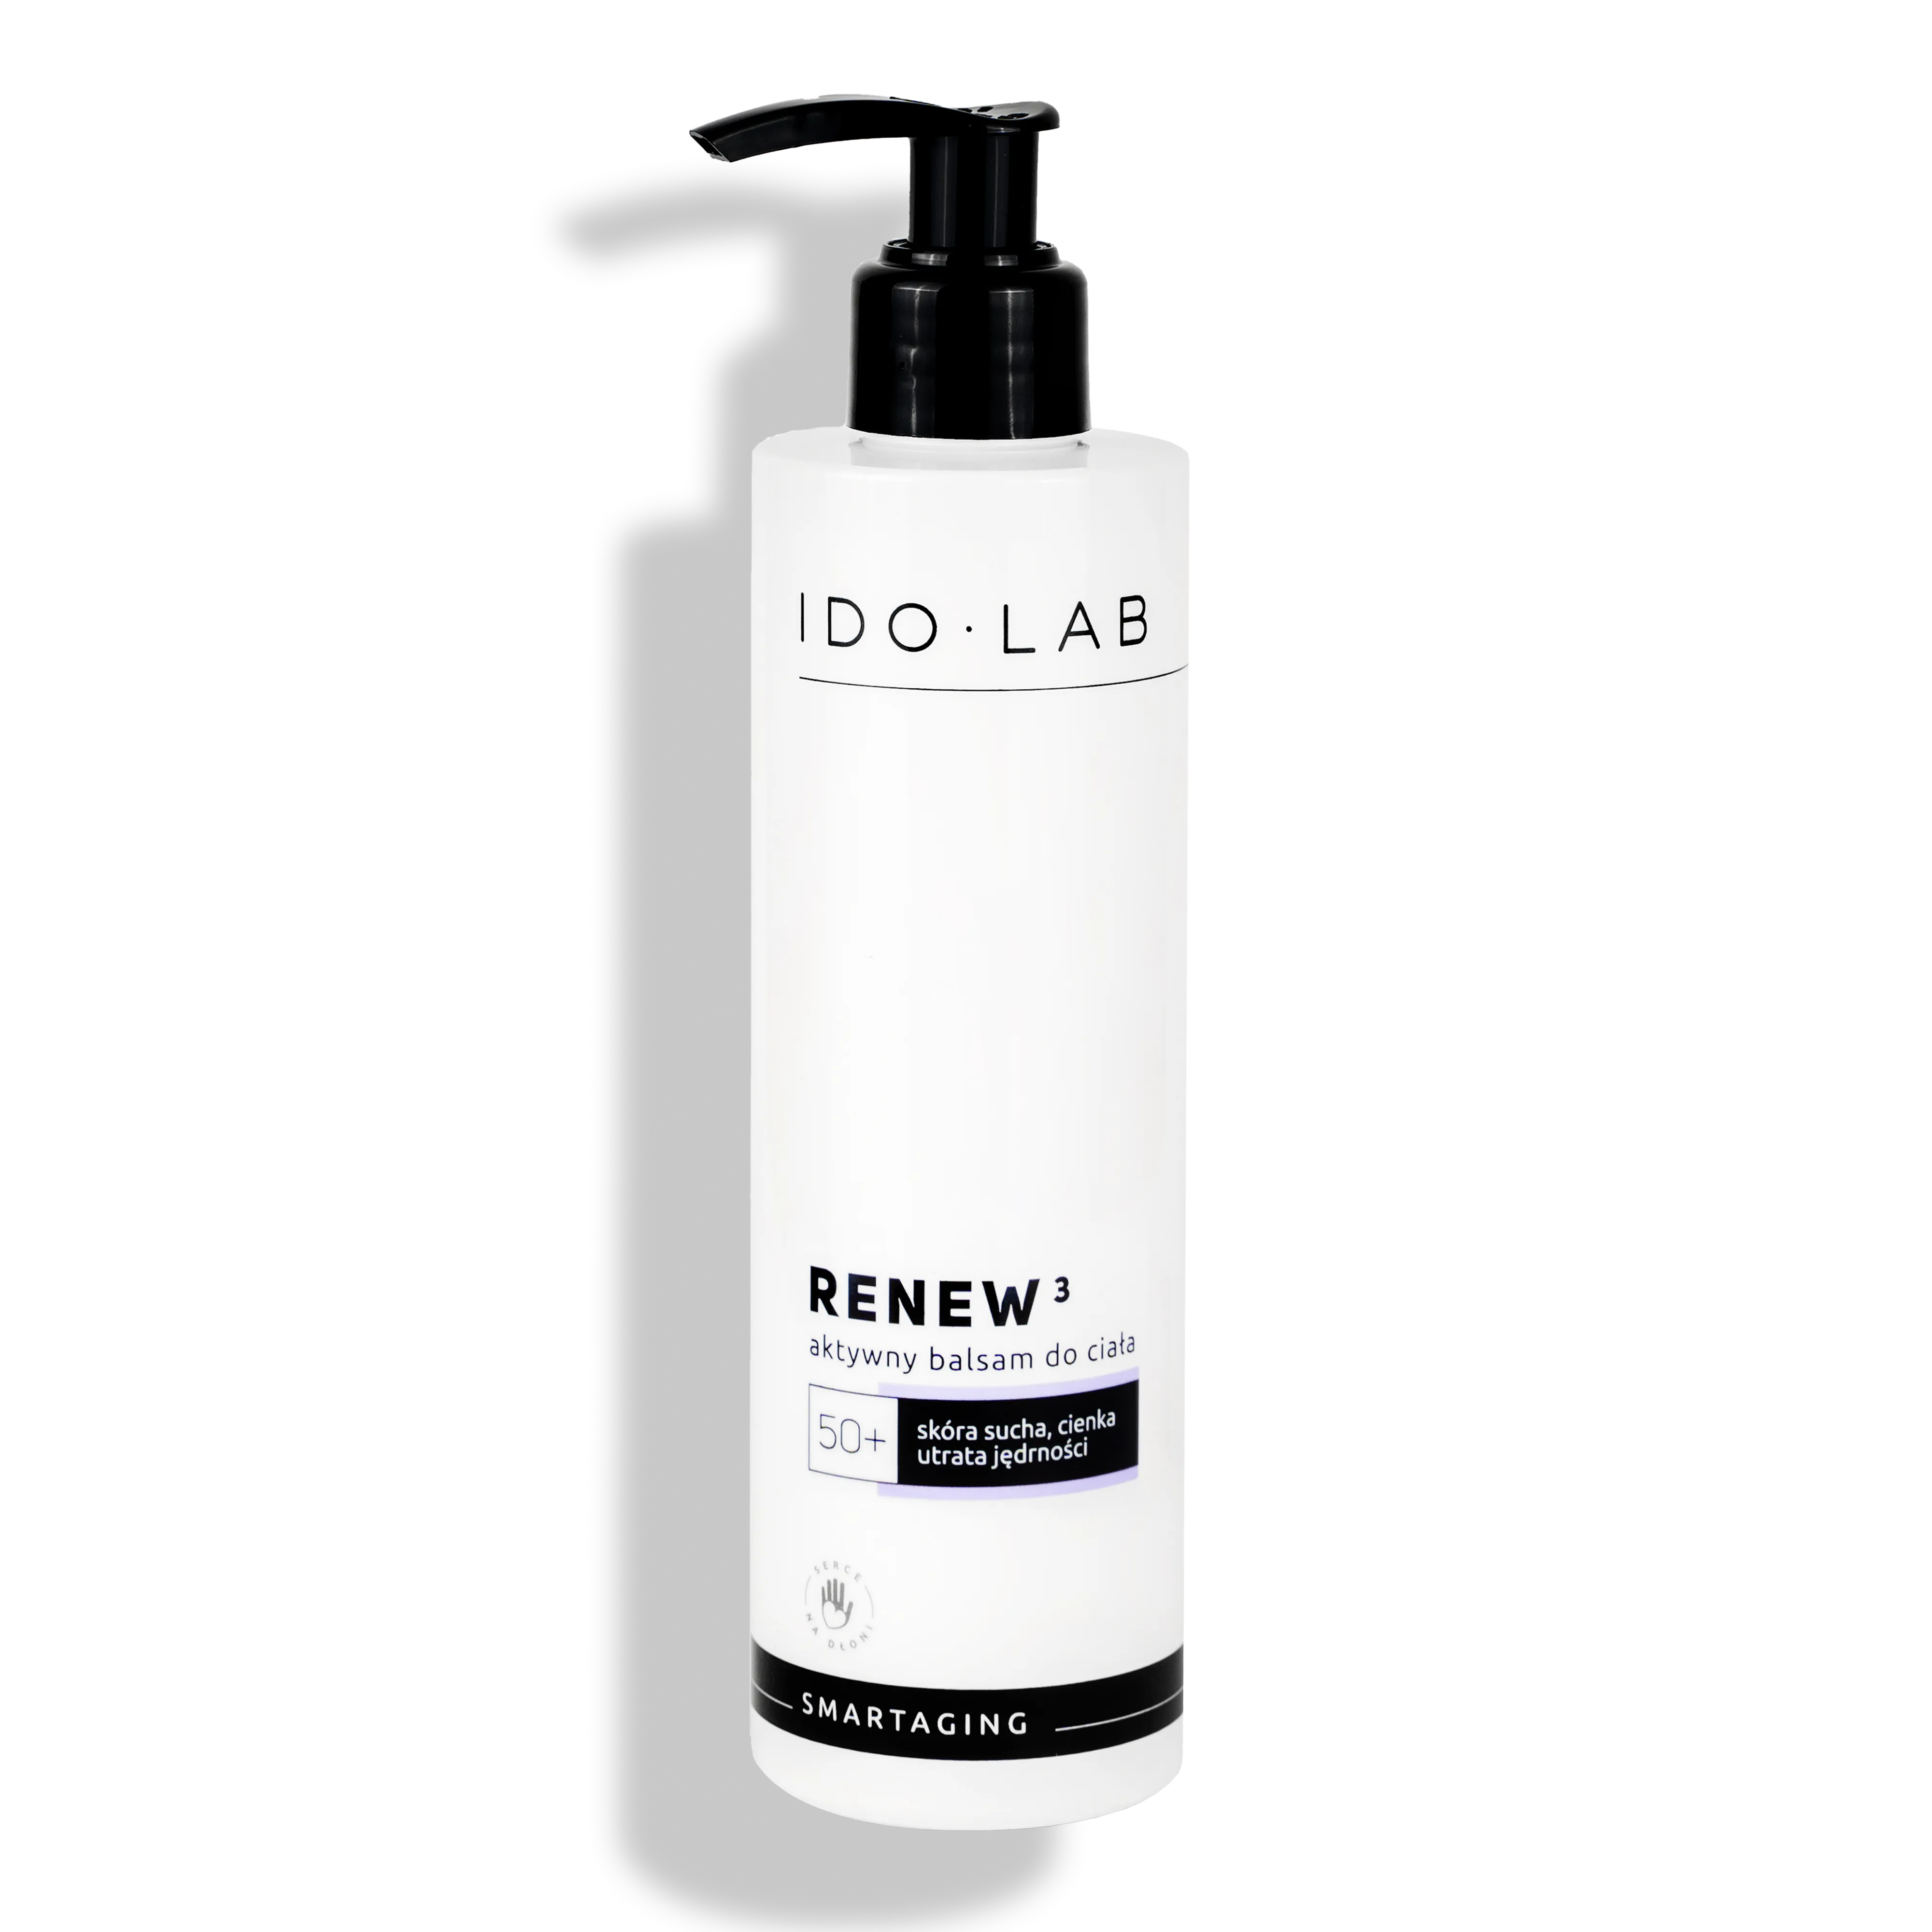 Ido Lab Renew3 intensywnie nawilżający aktywny balsam do ciała do skóry dojrzałej 50+, 250 ml